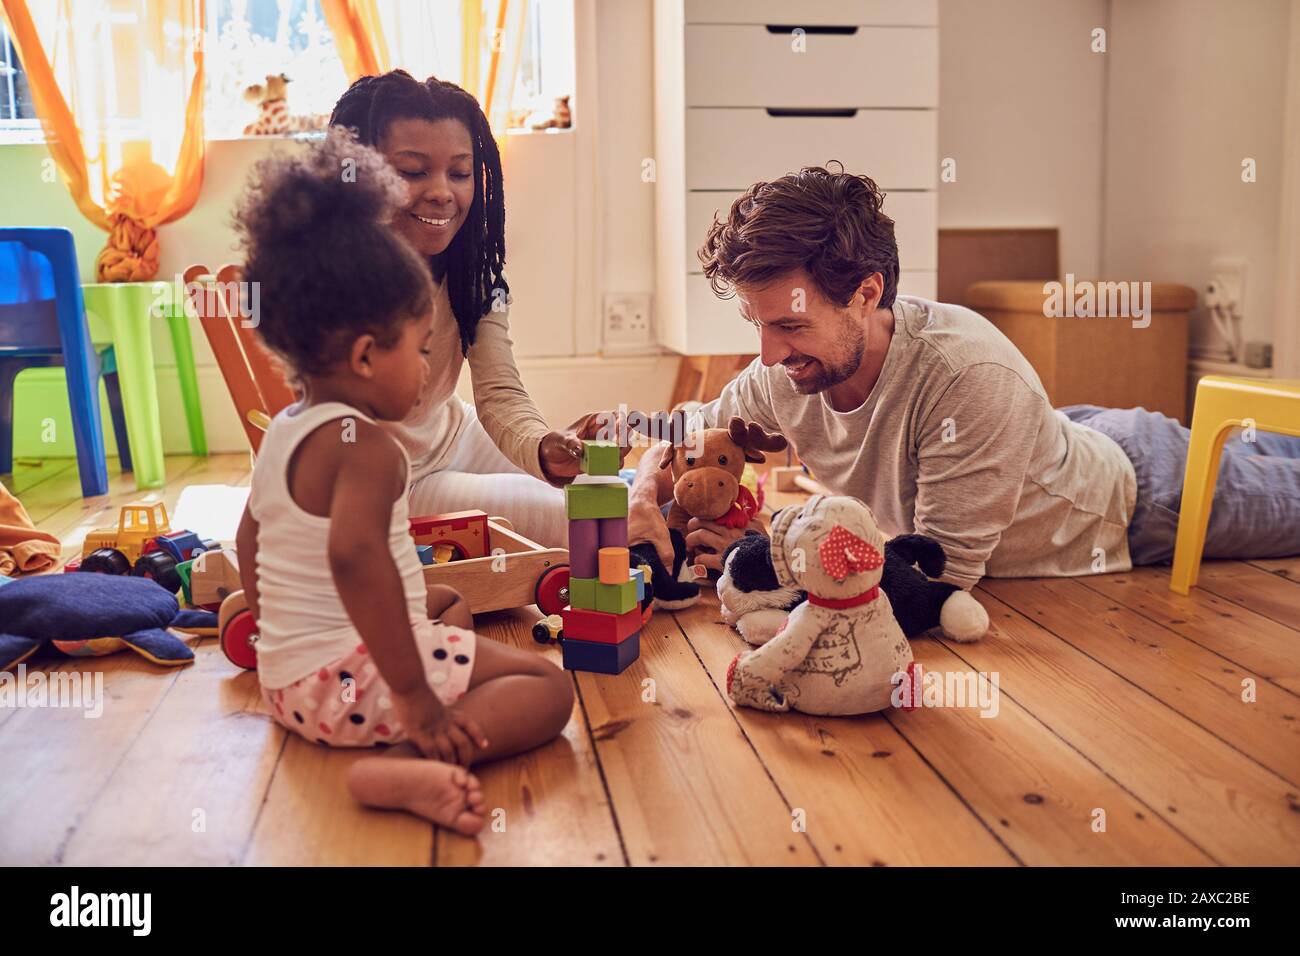 Junge Familie, die mit Spielzeug auf dem Boden spielt Stockfoto